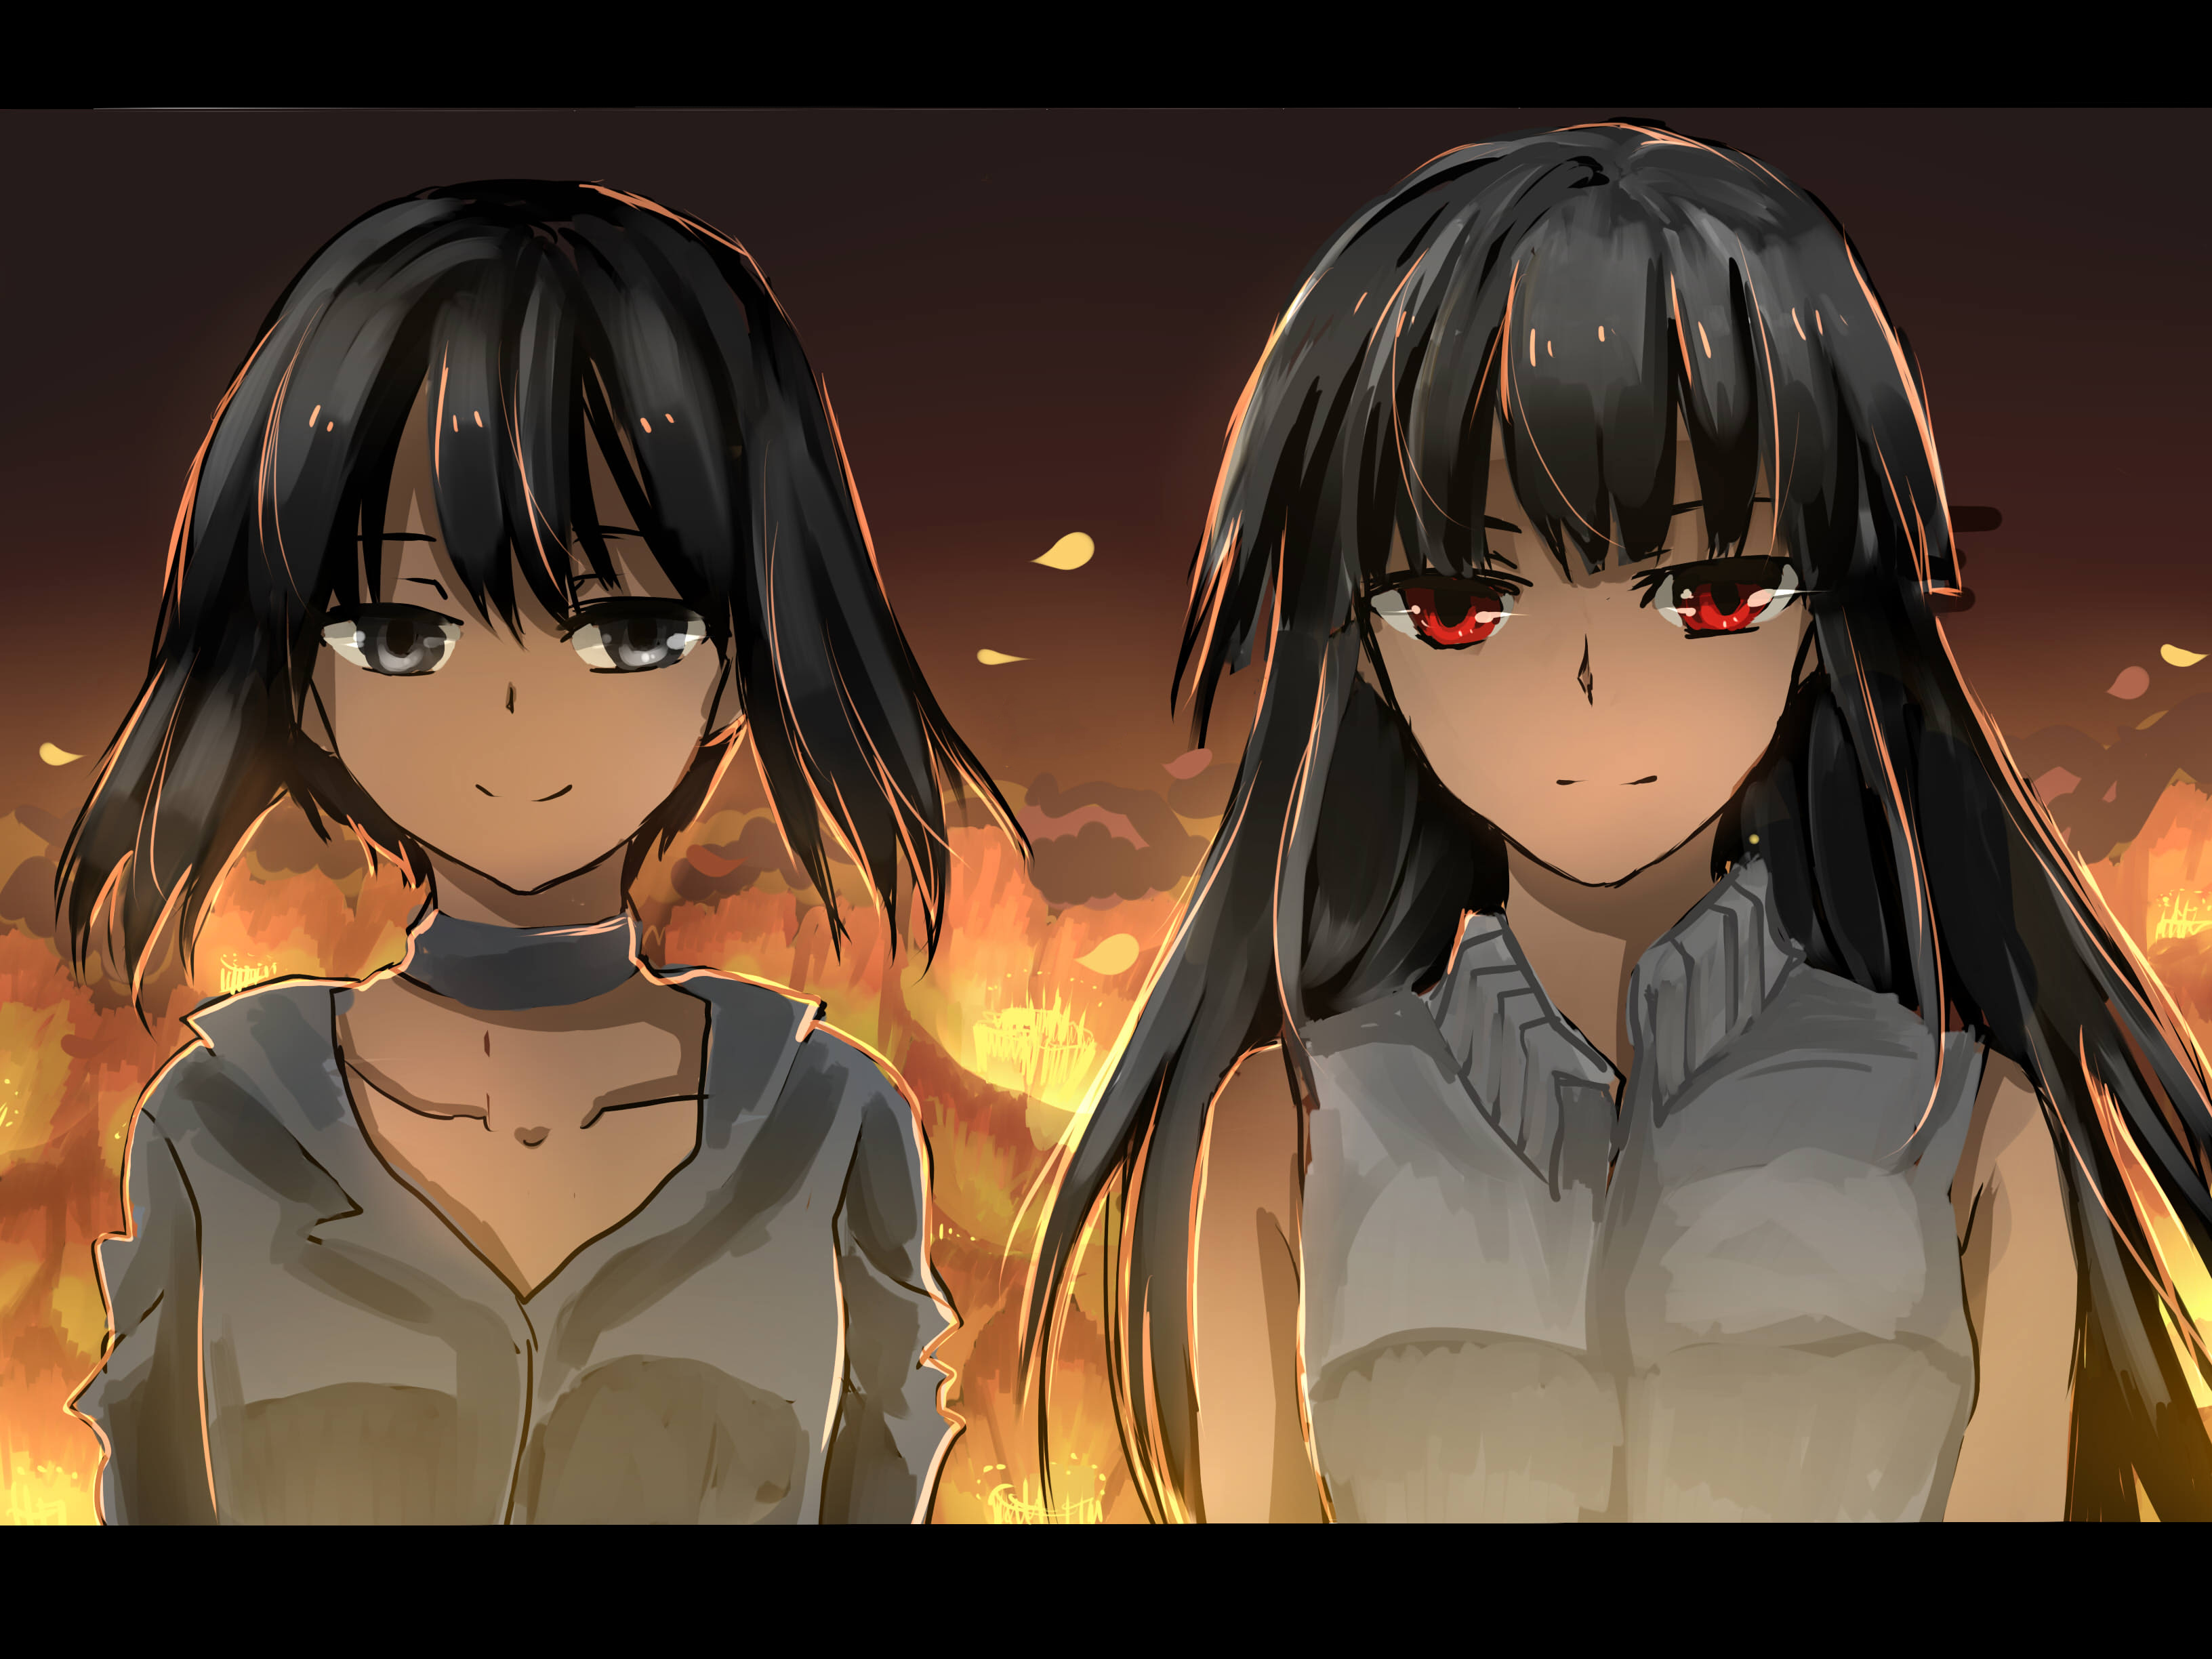 Akame and Kurome by Lara E (pixiv)